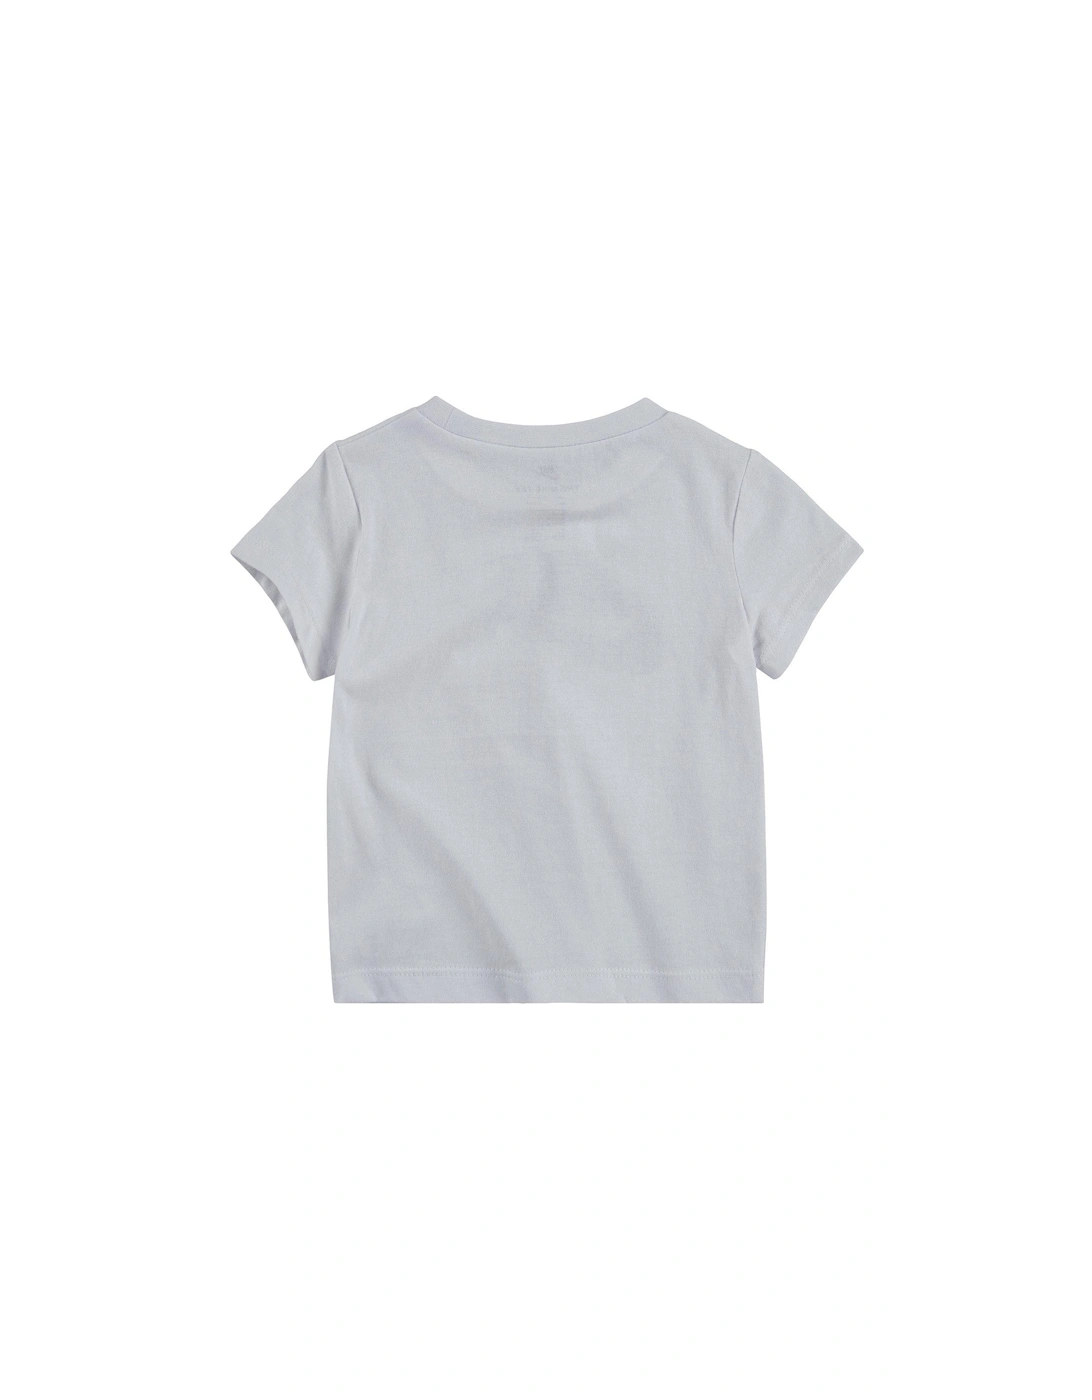 Kids Boys Futura T-Shirt S/S - White